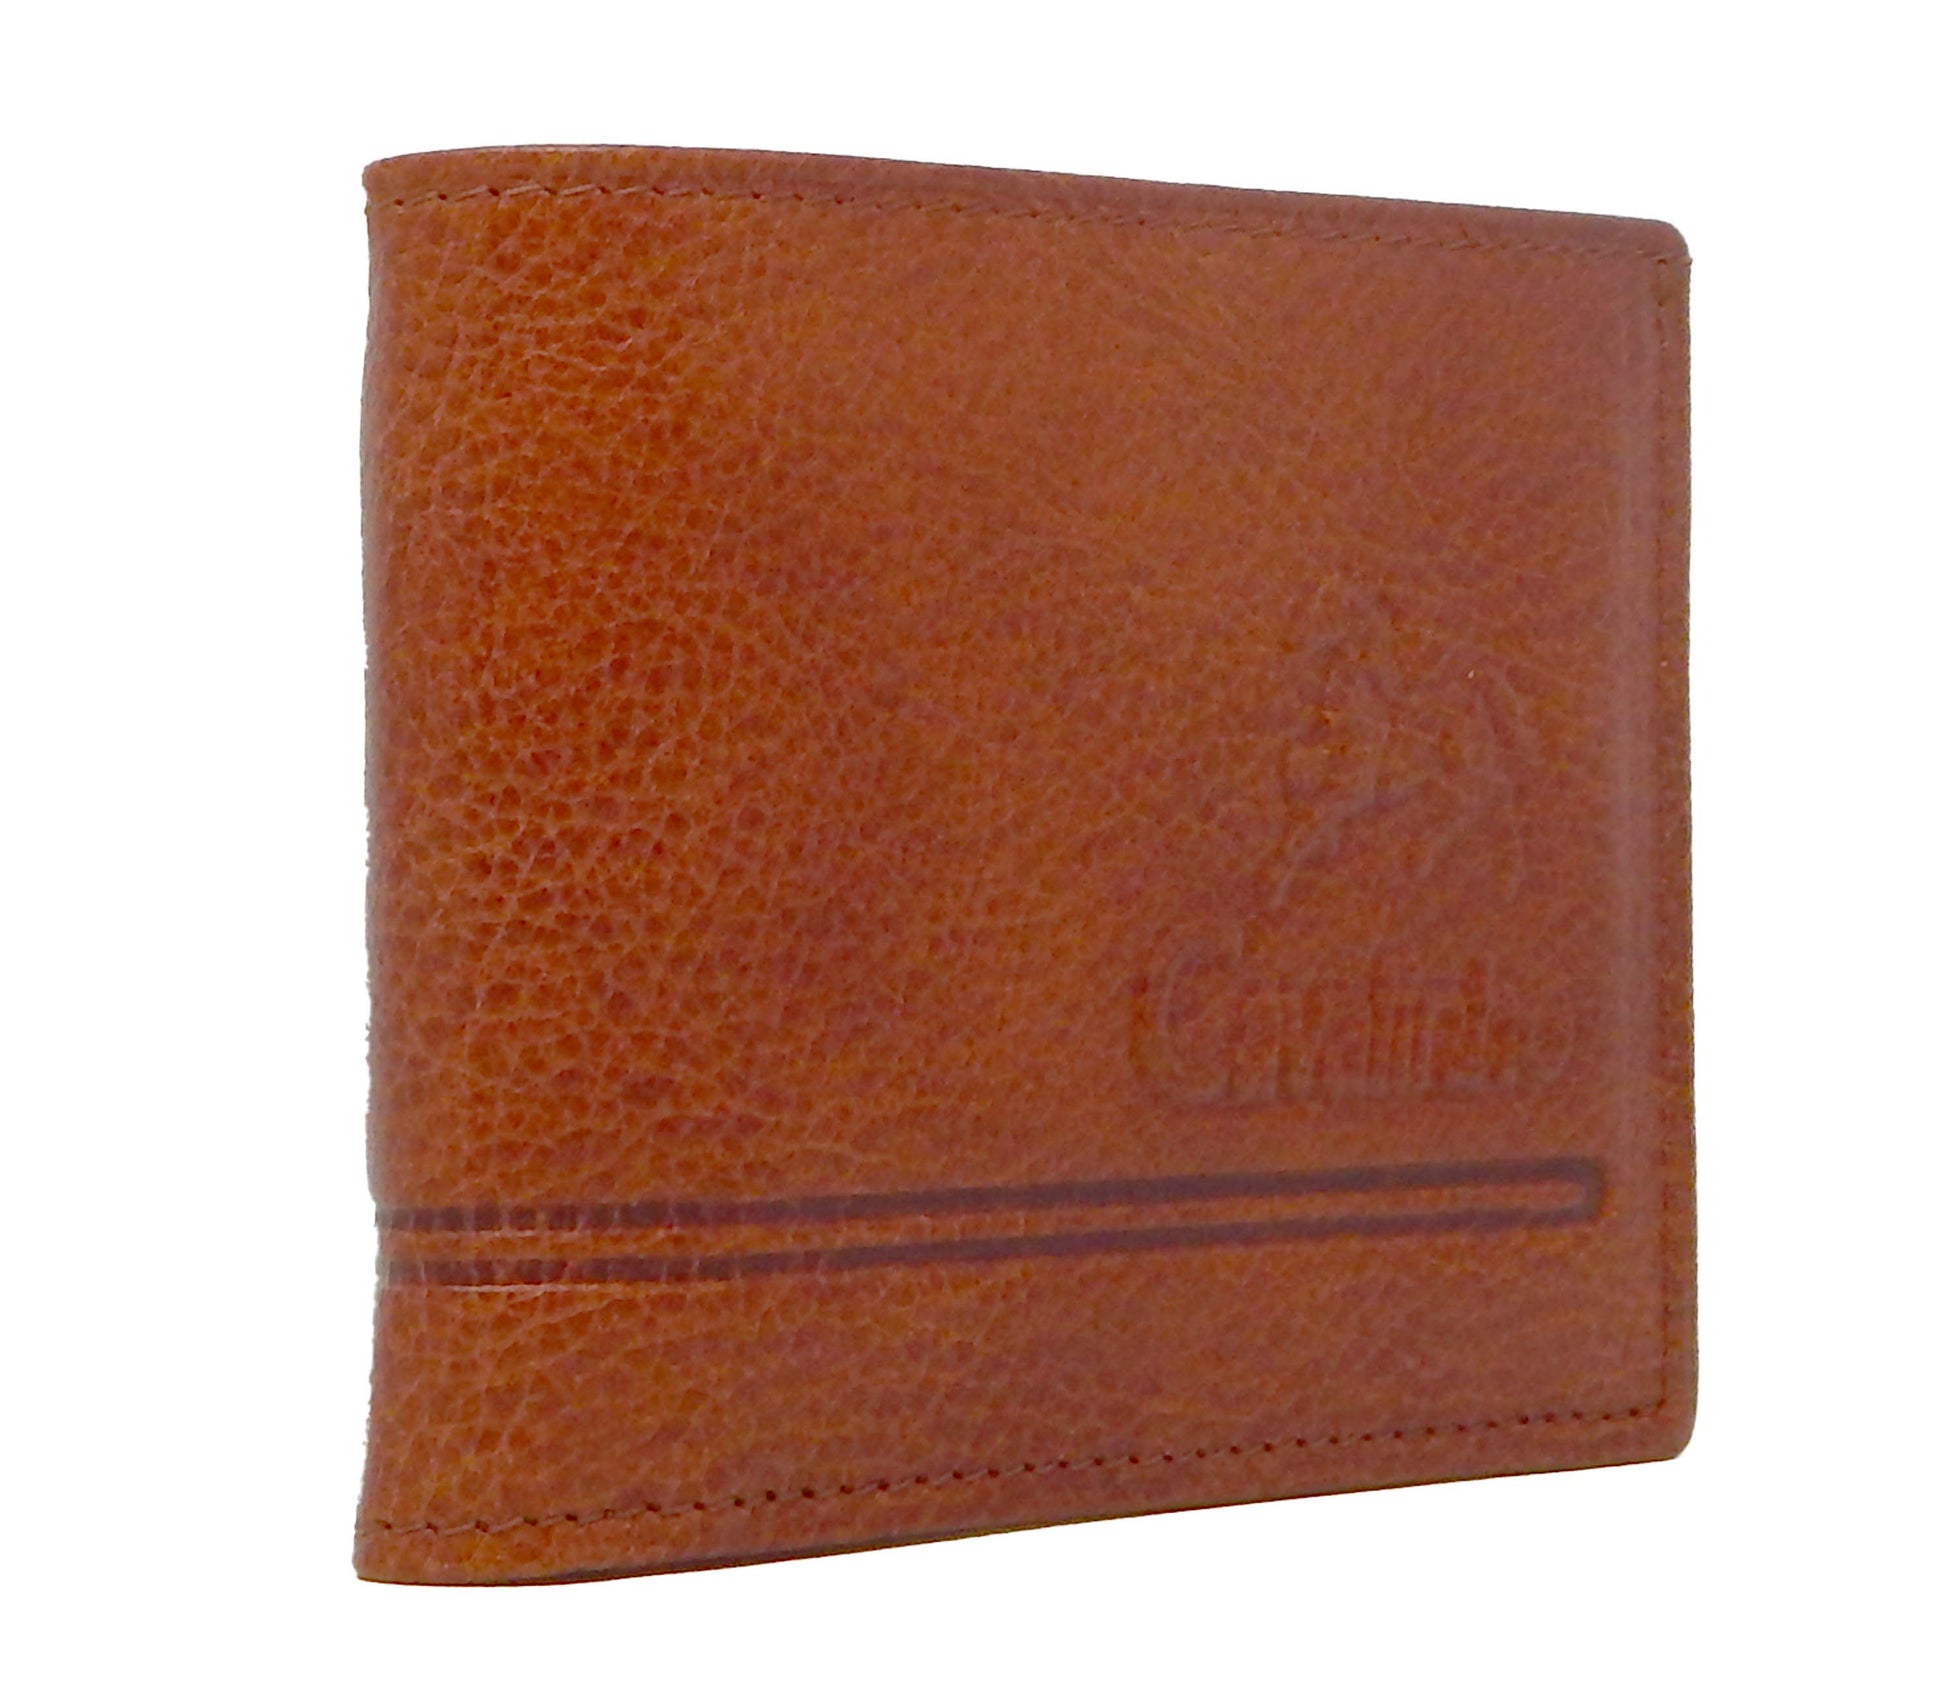 #color_ SaddleBrown | Cavalinho Men's Trifold Leather Wallet - SaddleBrown - 28610517.13.99_1